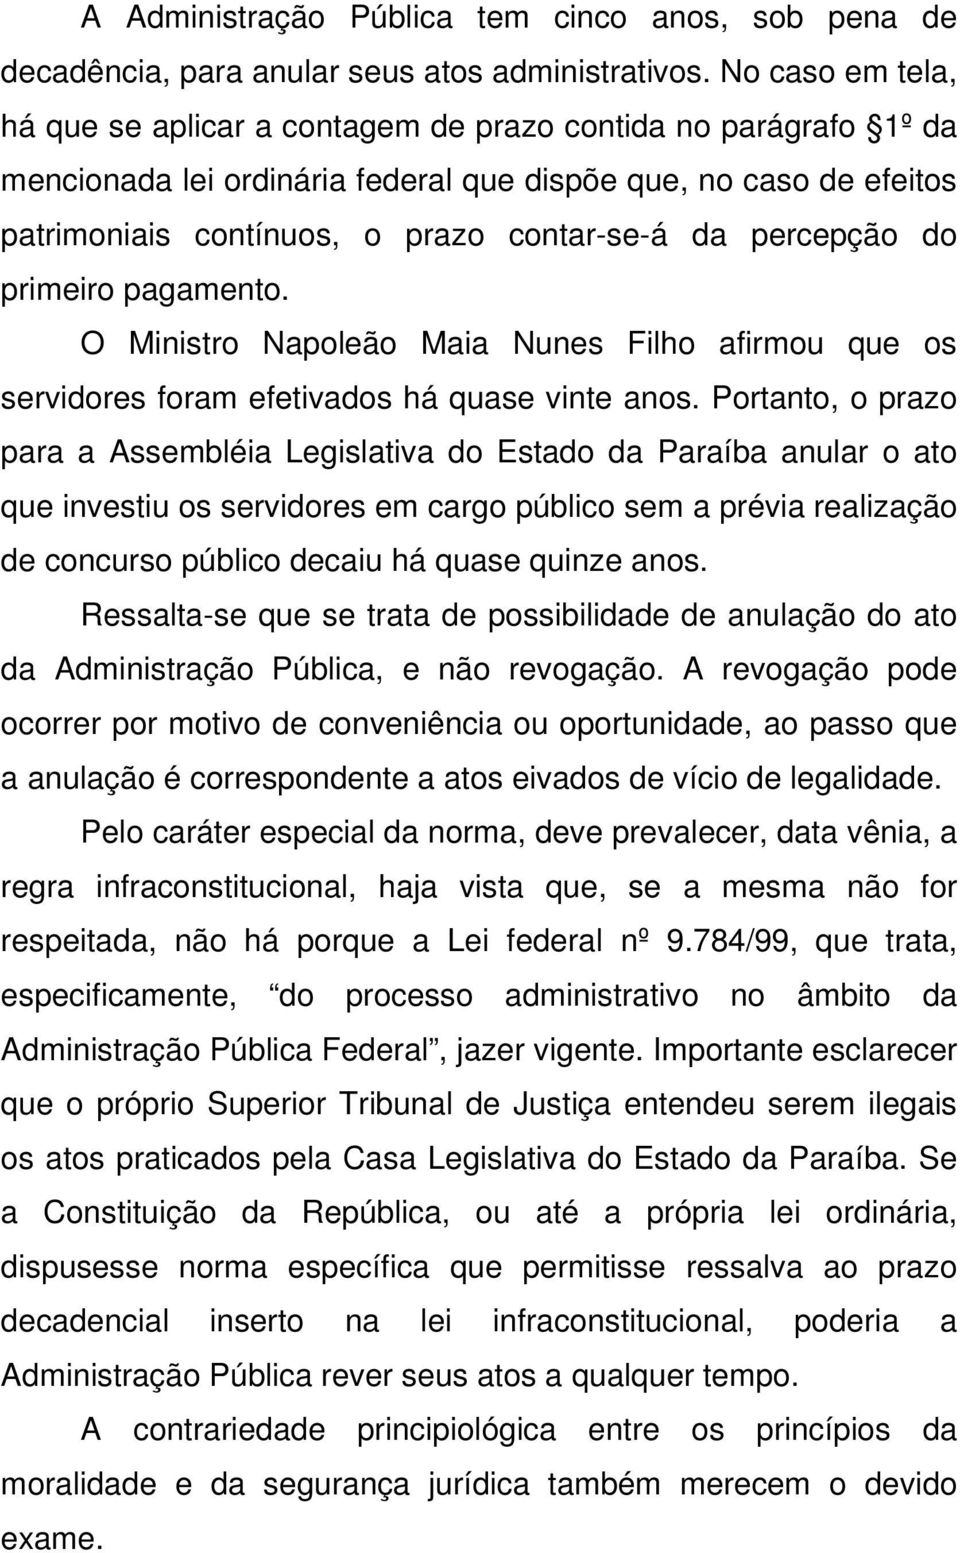 percepção do primeiro pagamento. O Ministro Napoleão Maia Nunes Filho afirmou que os servidores foram efetivados há quase vinte anos.